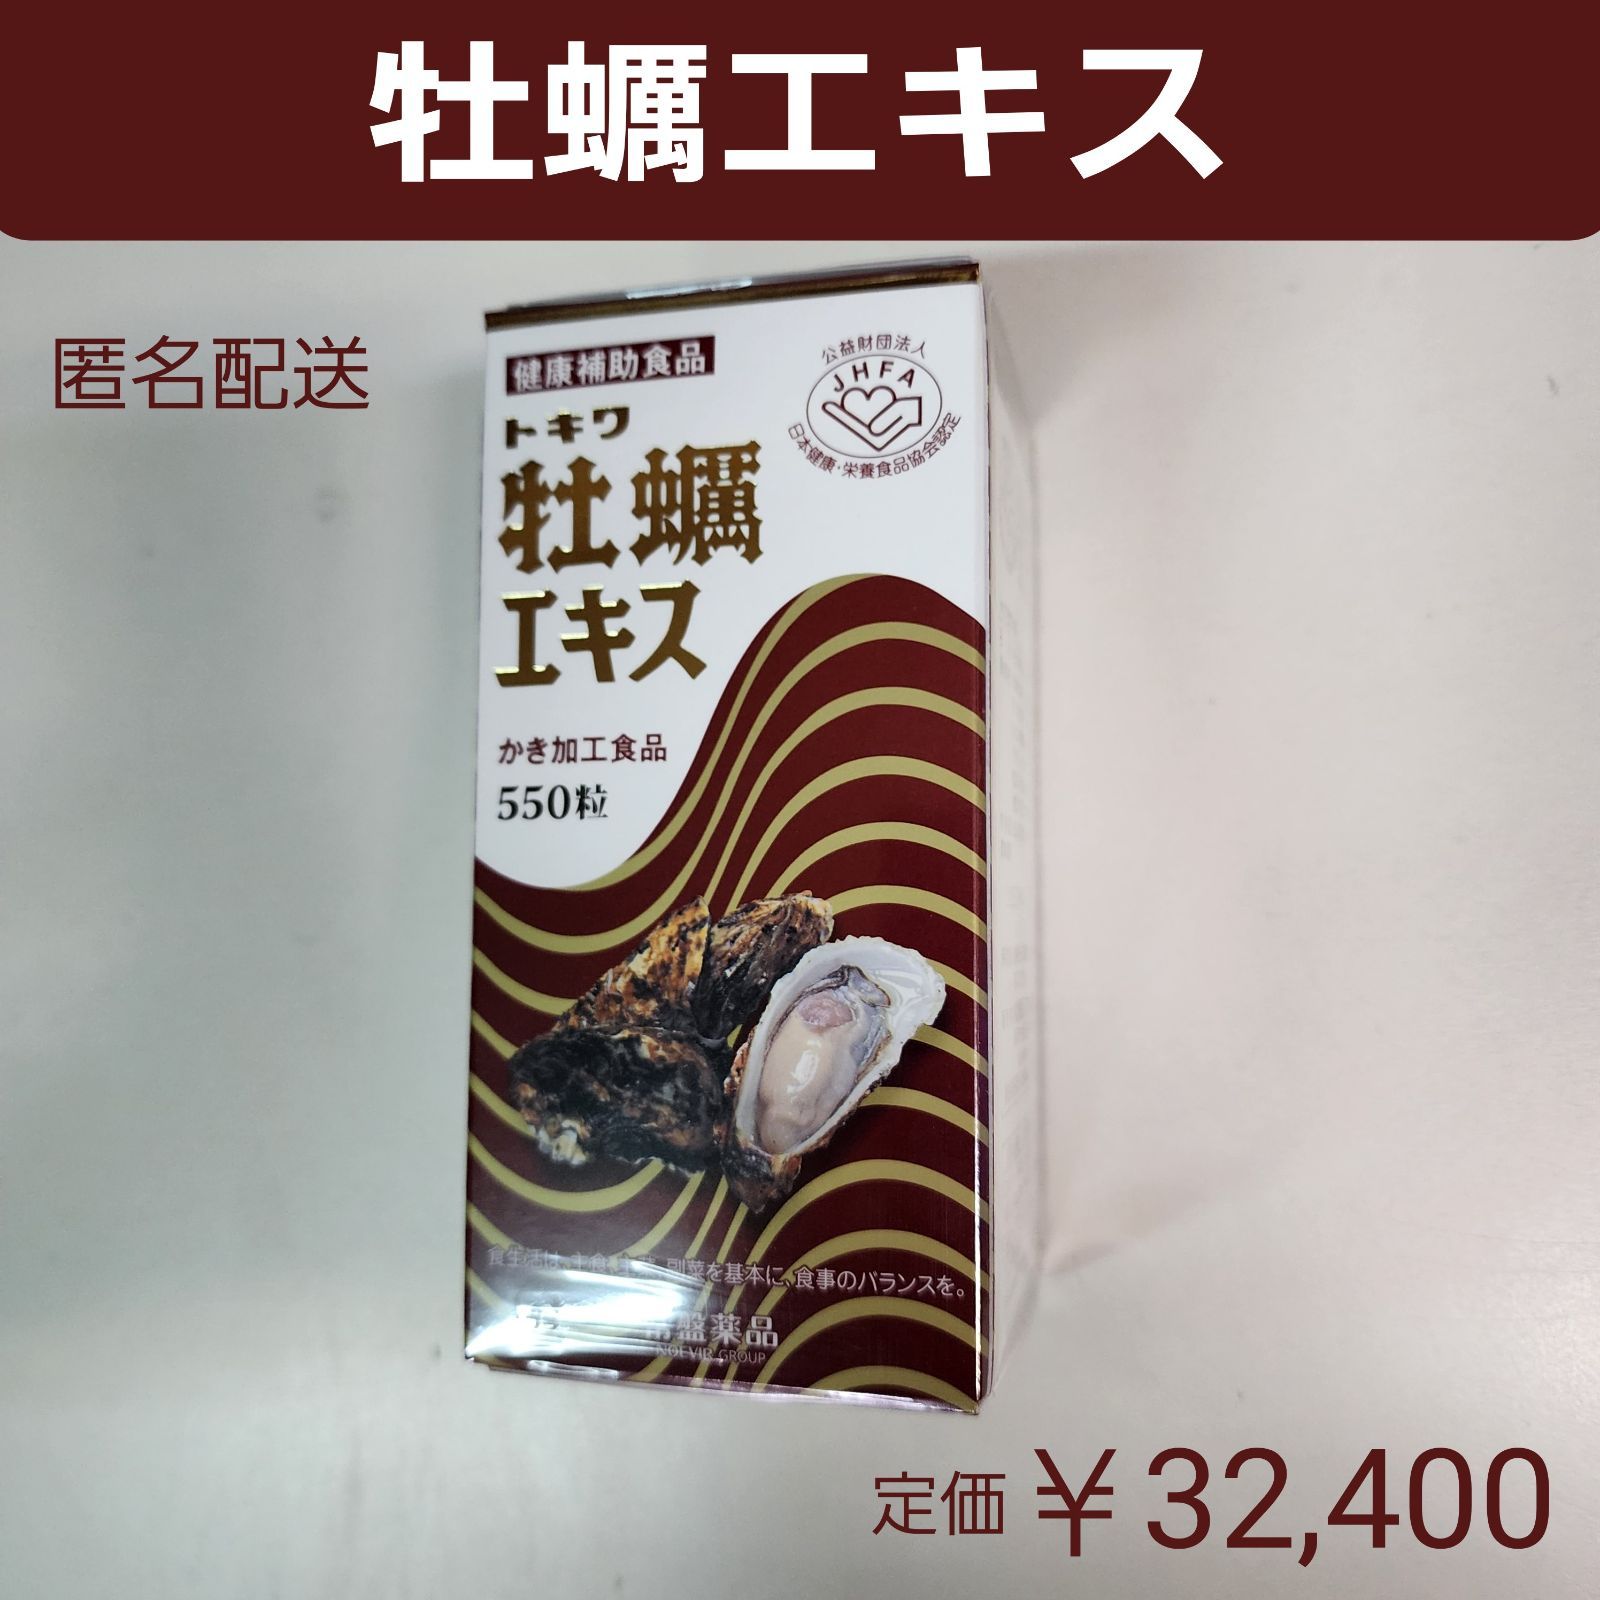 トキワ 牡蠣エキス 550粒入り 価格32,400円 - 健康用品